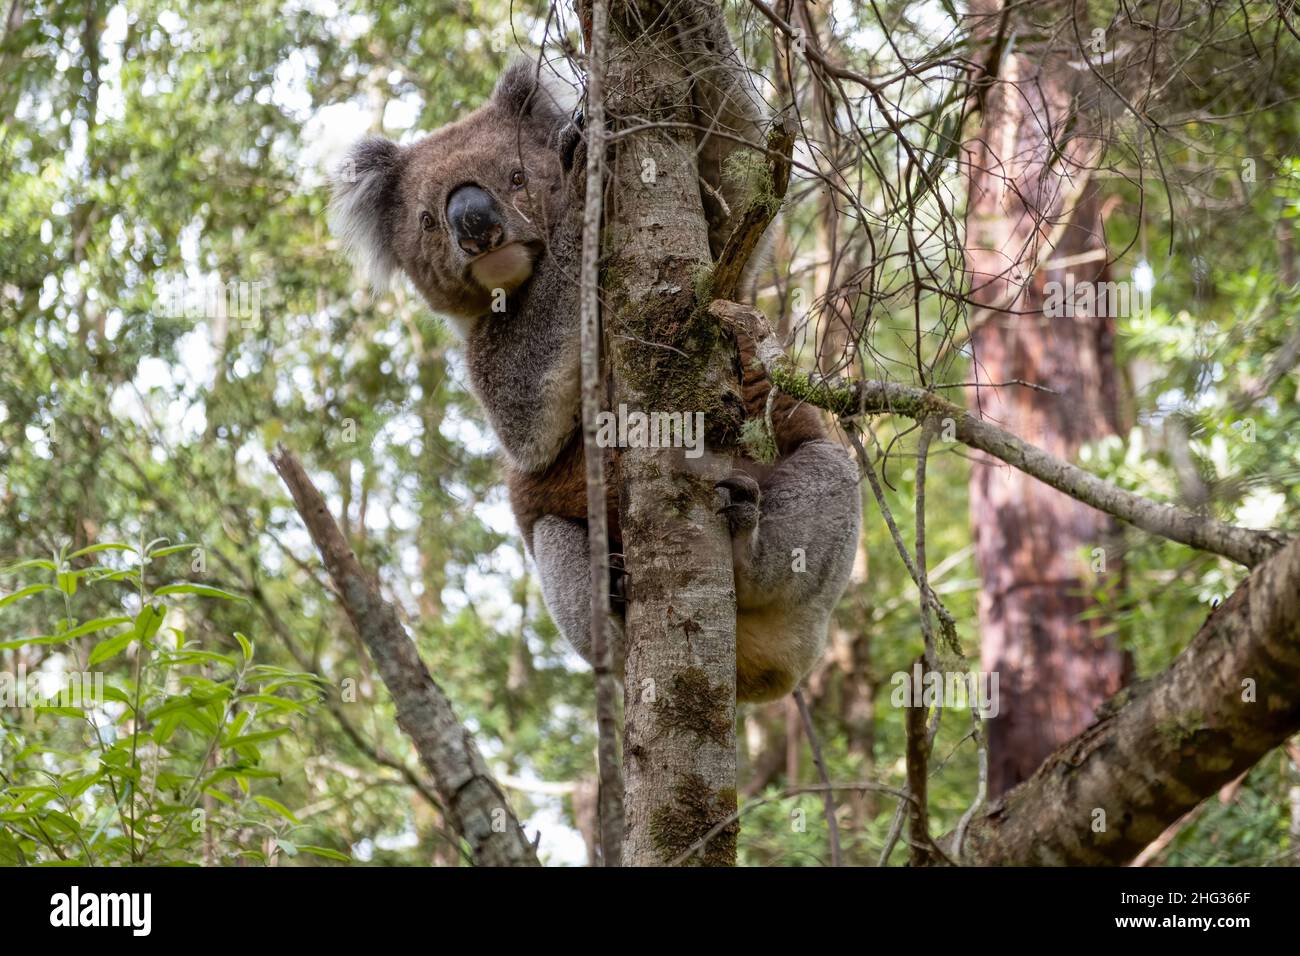 Koala on a tree in the wild - extreme closeup Stock Photo